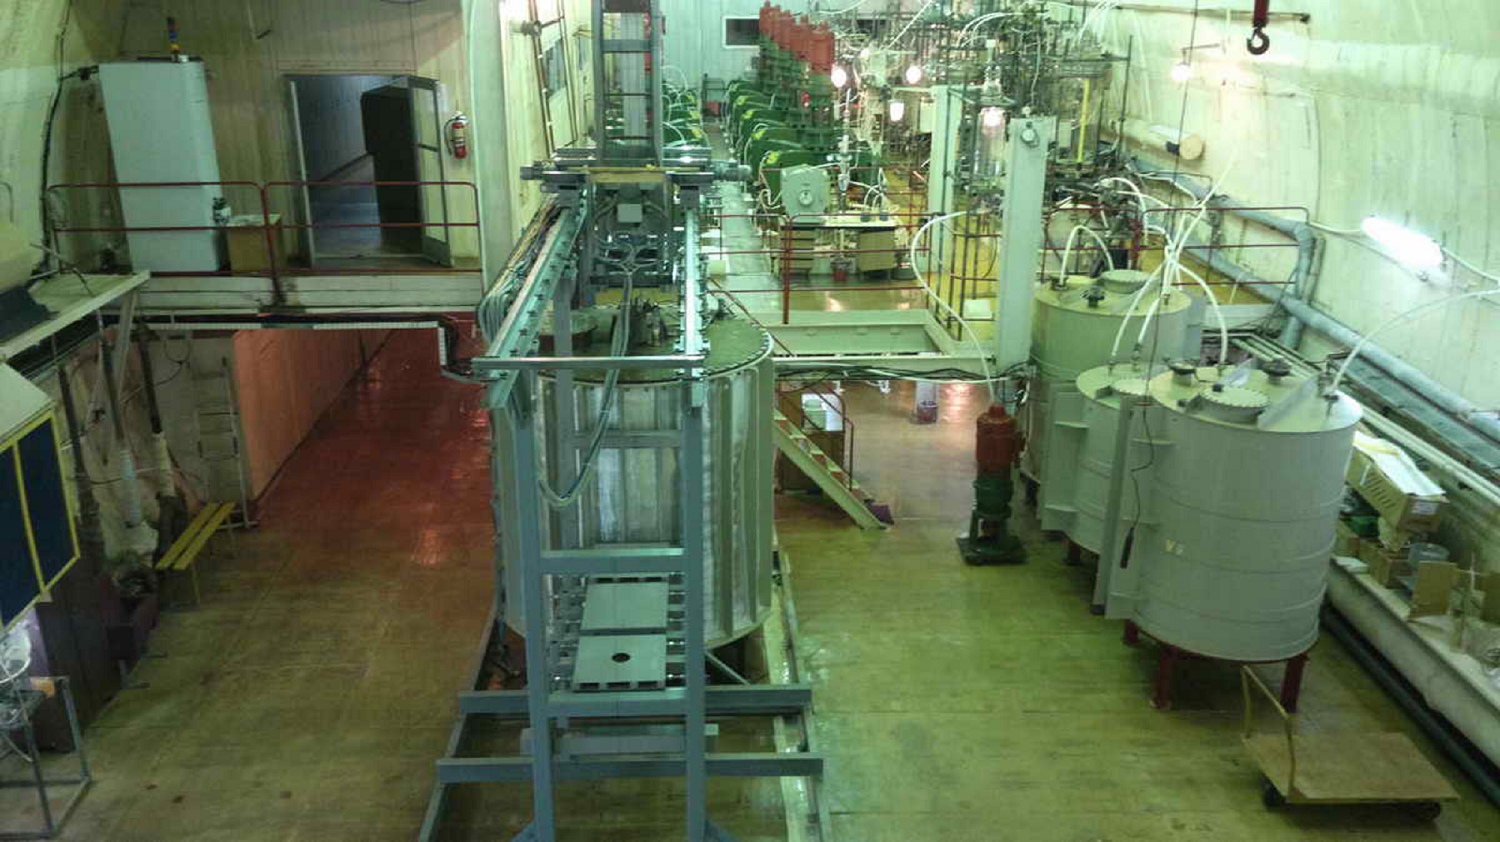 Macchinari sterili per il rilevamento di neutrini in una grande stanza sotterranea in Russia